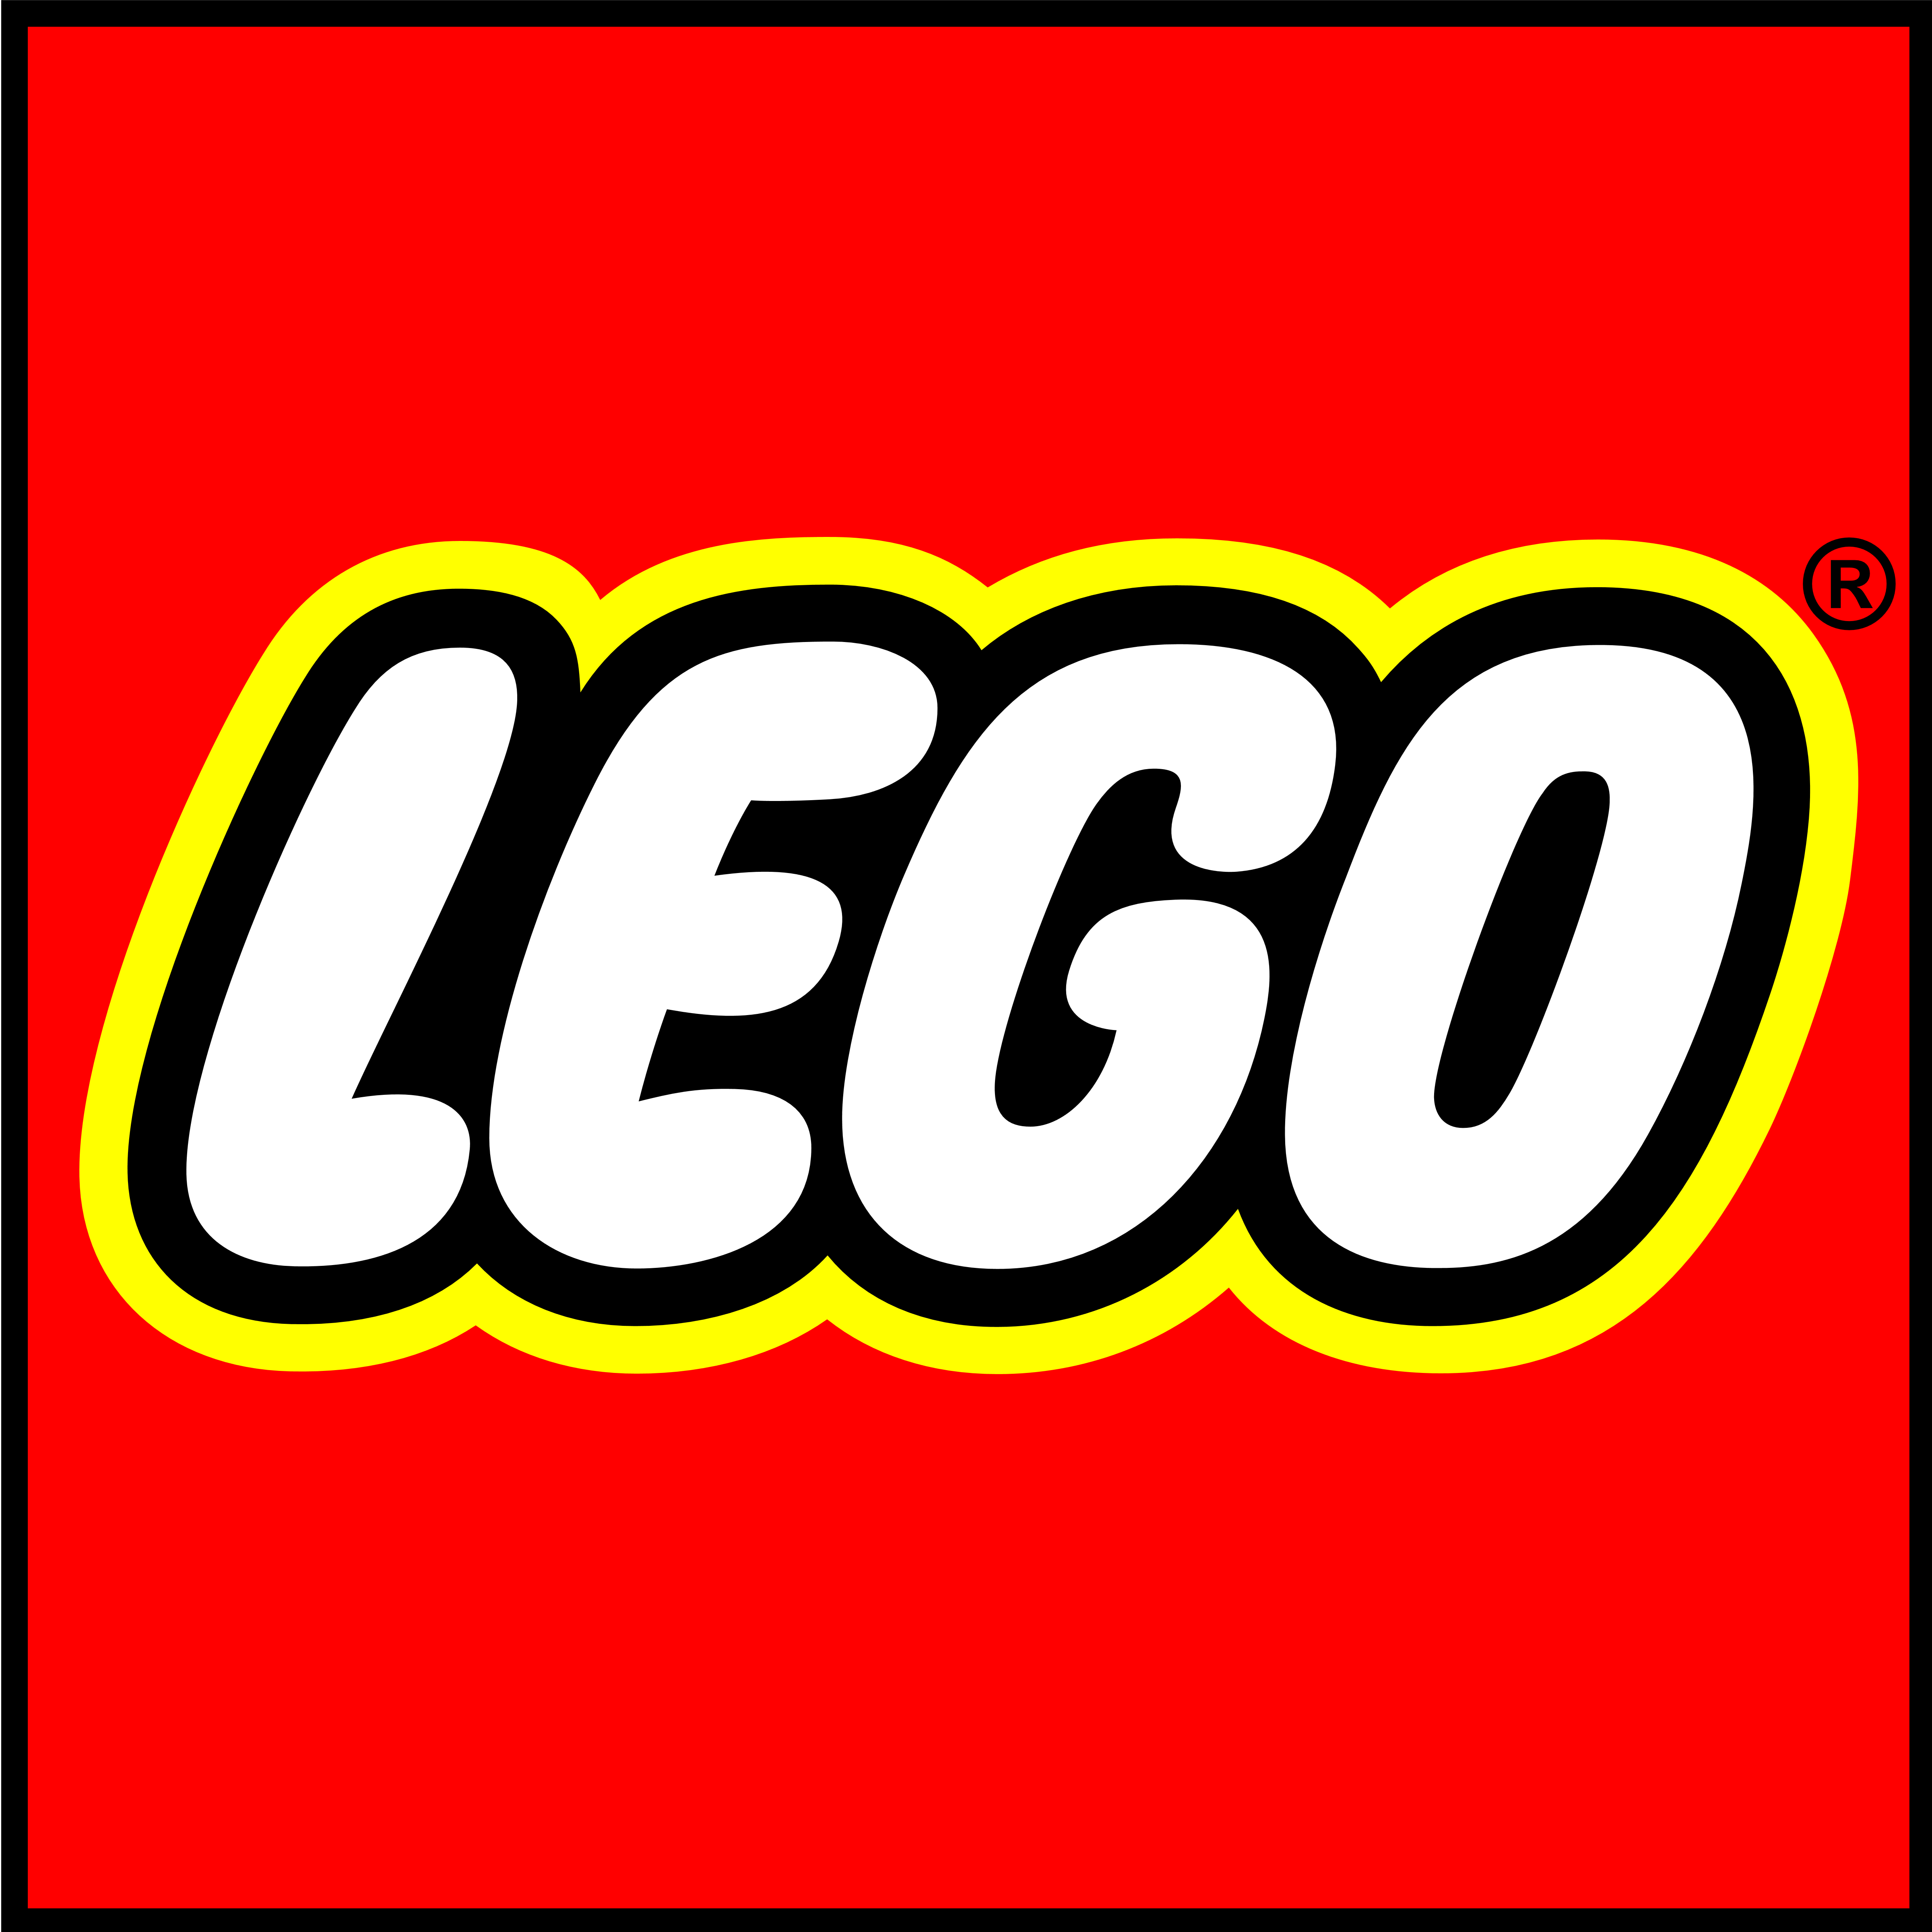 Lego Logos Download